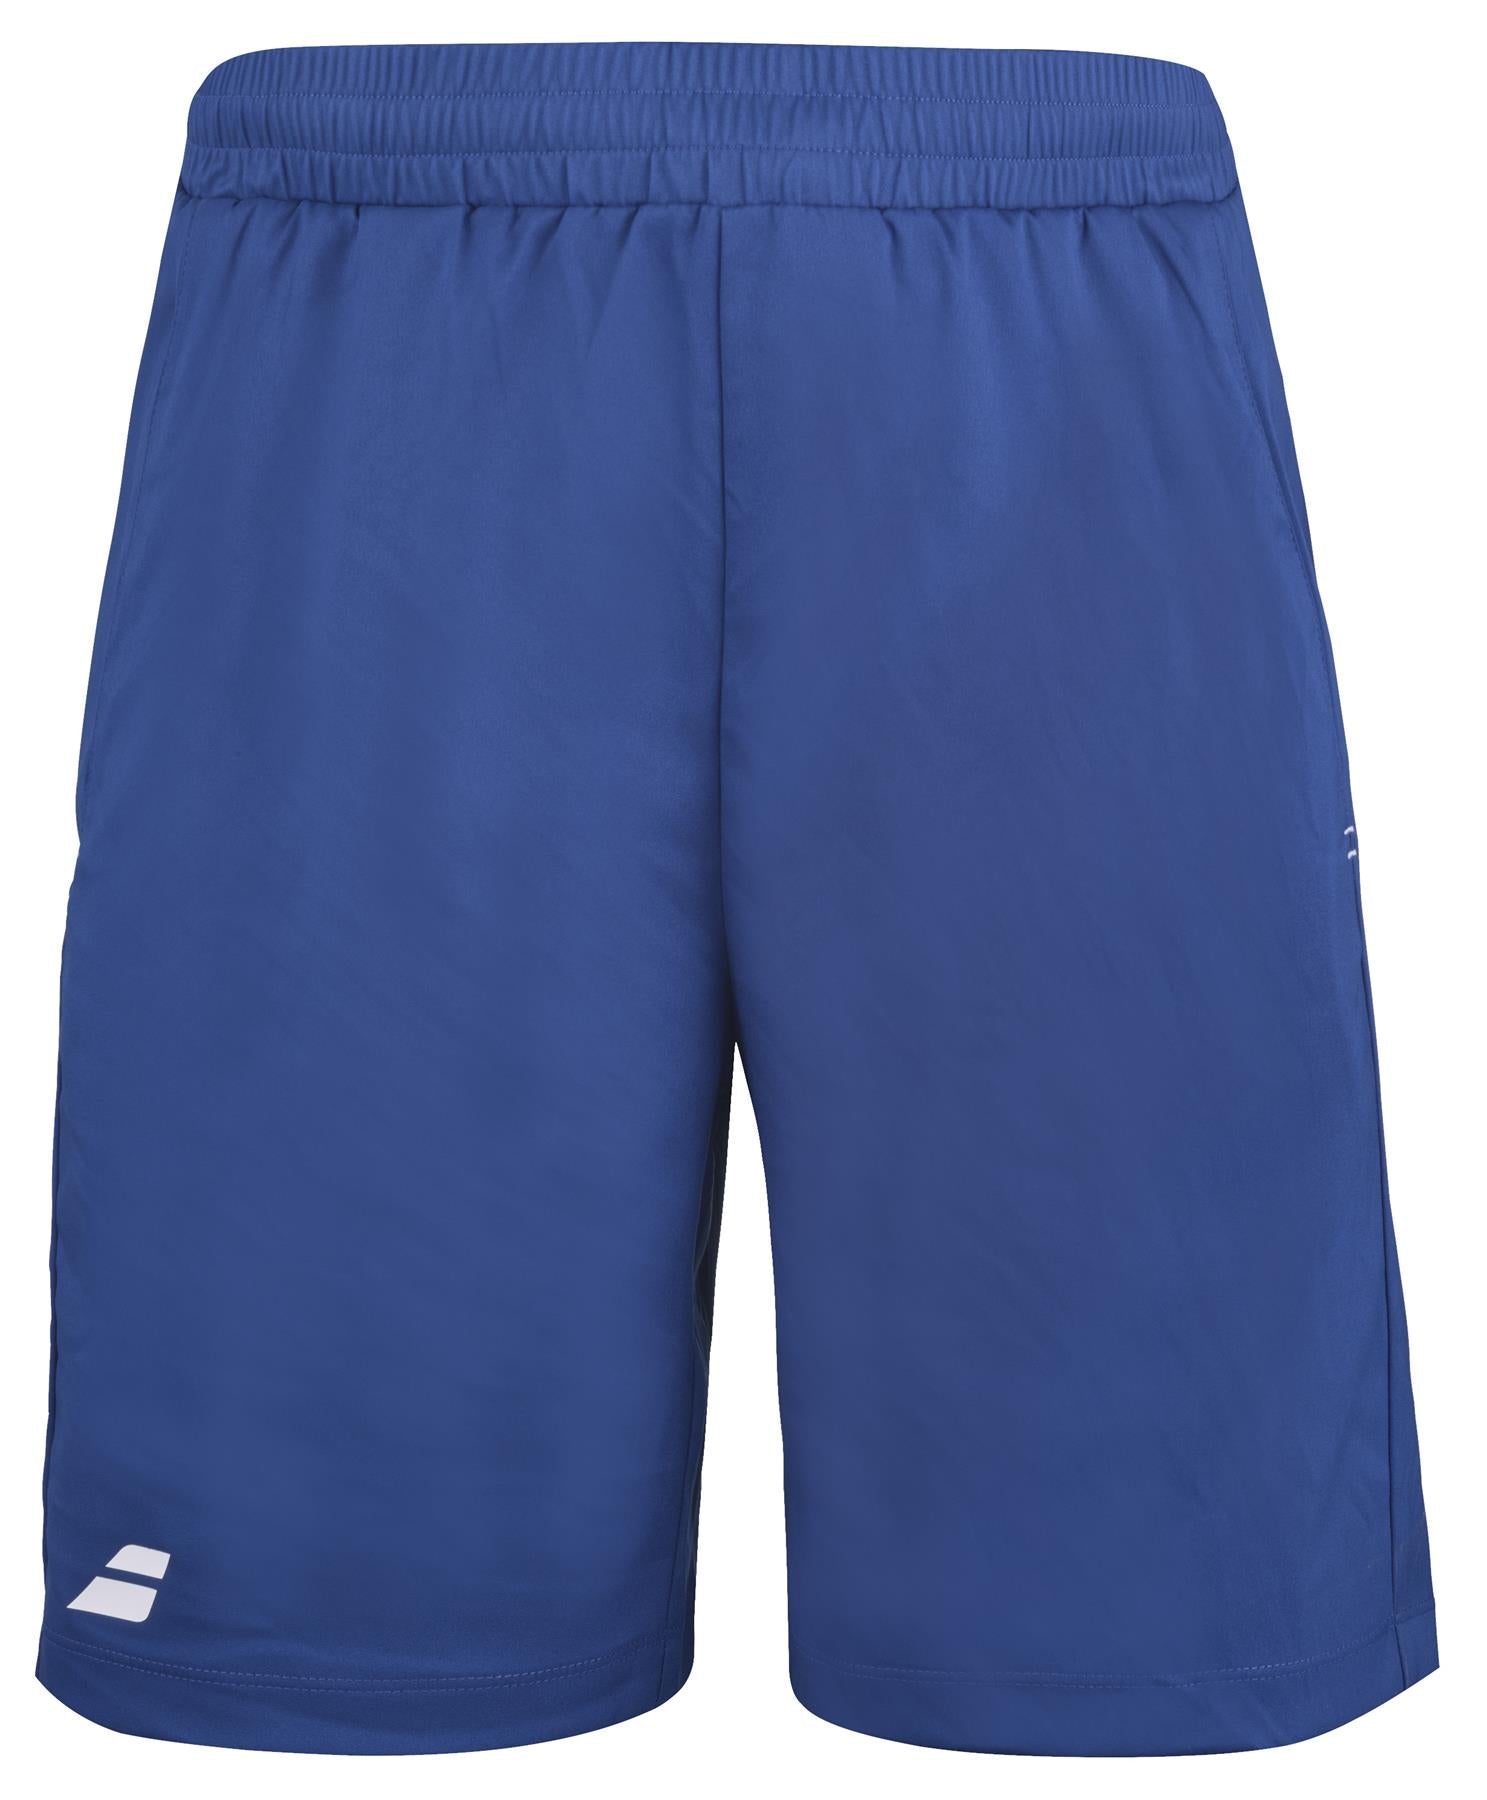 Babolat Play Mens Badminton Shorts - Sodalite Blue